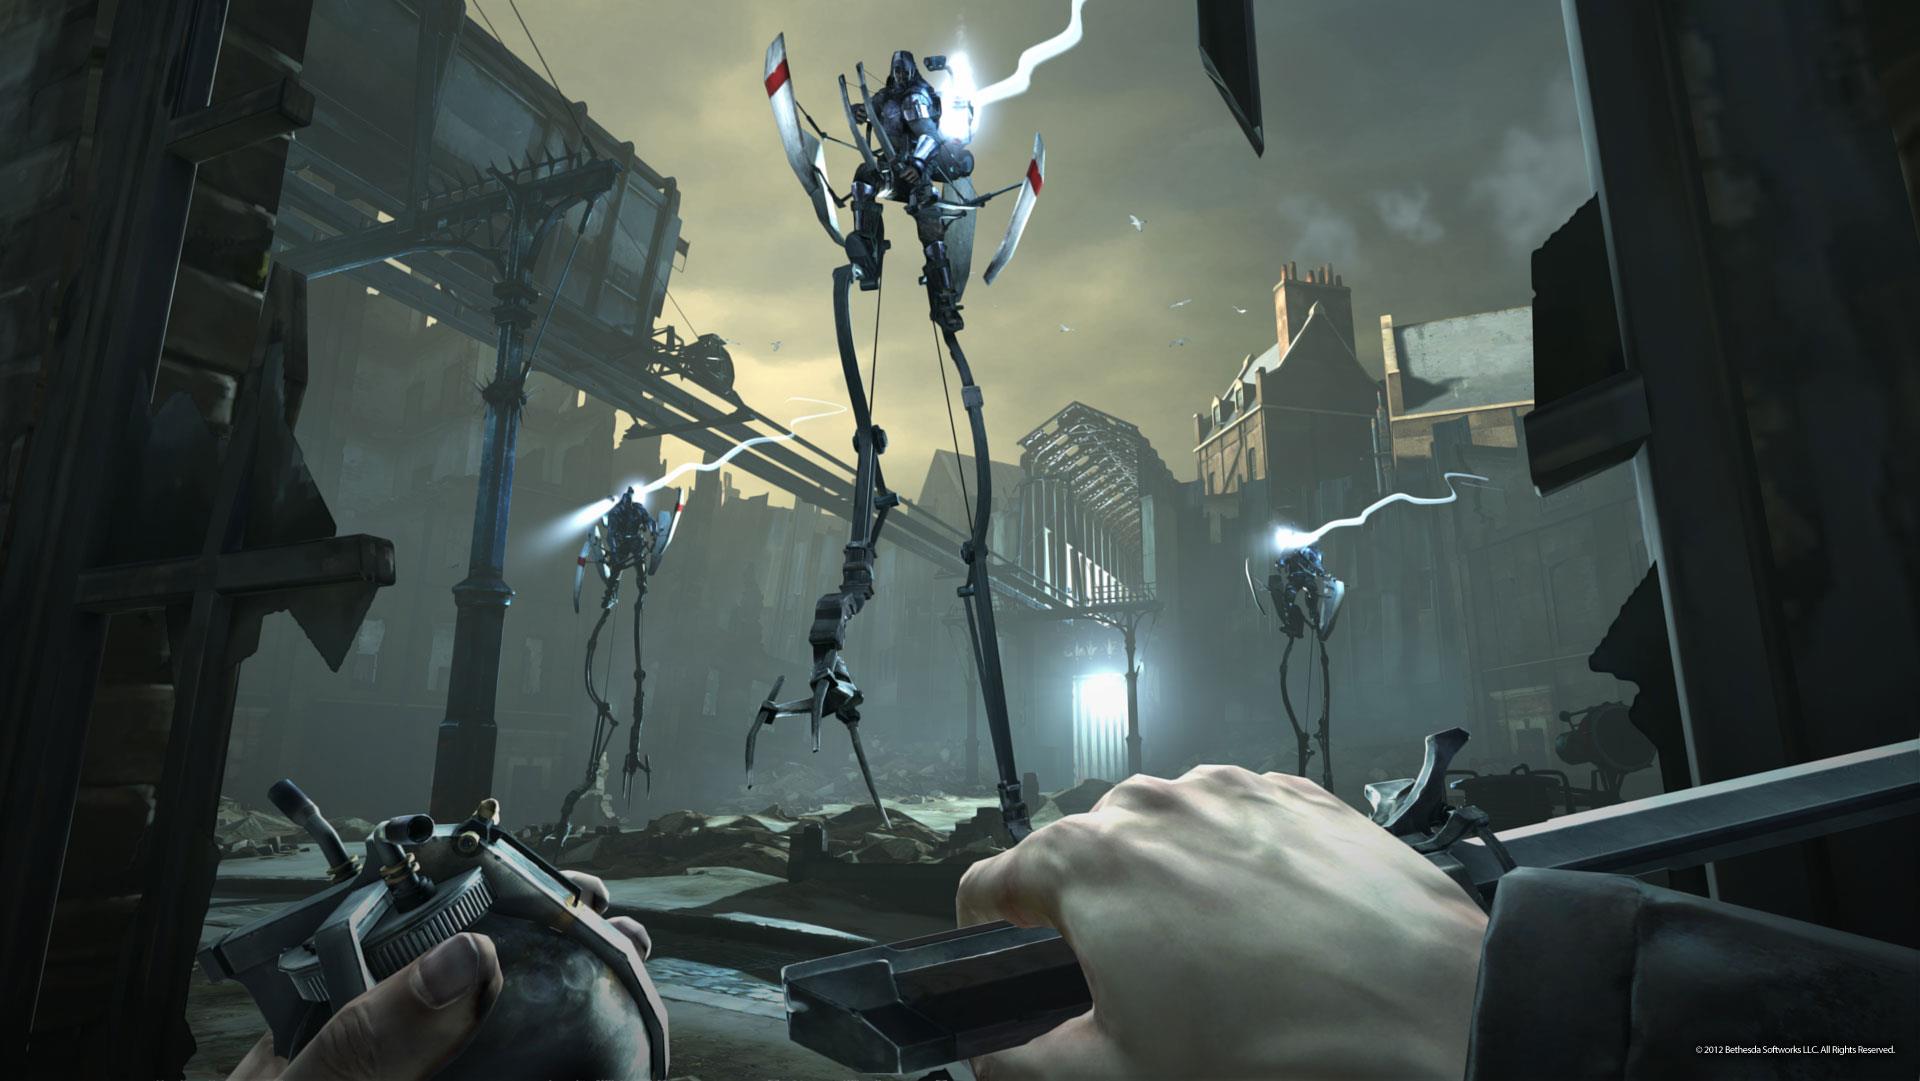 Immagine pubblicata in relazione al seguente contenuto: Arkane Studios mostra nuovi screenshot del game Dishonored | Nome immagine: news17137_1.jpg